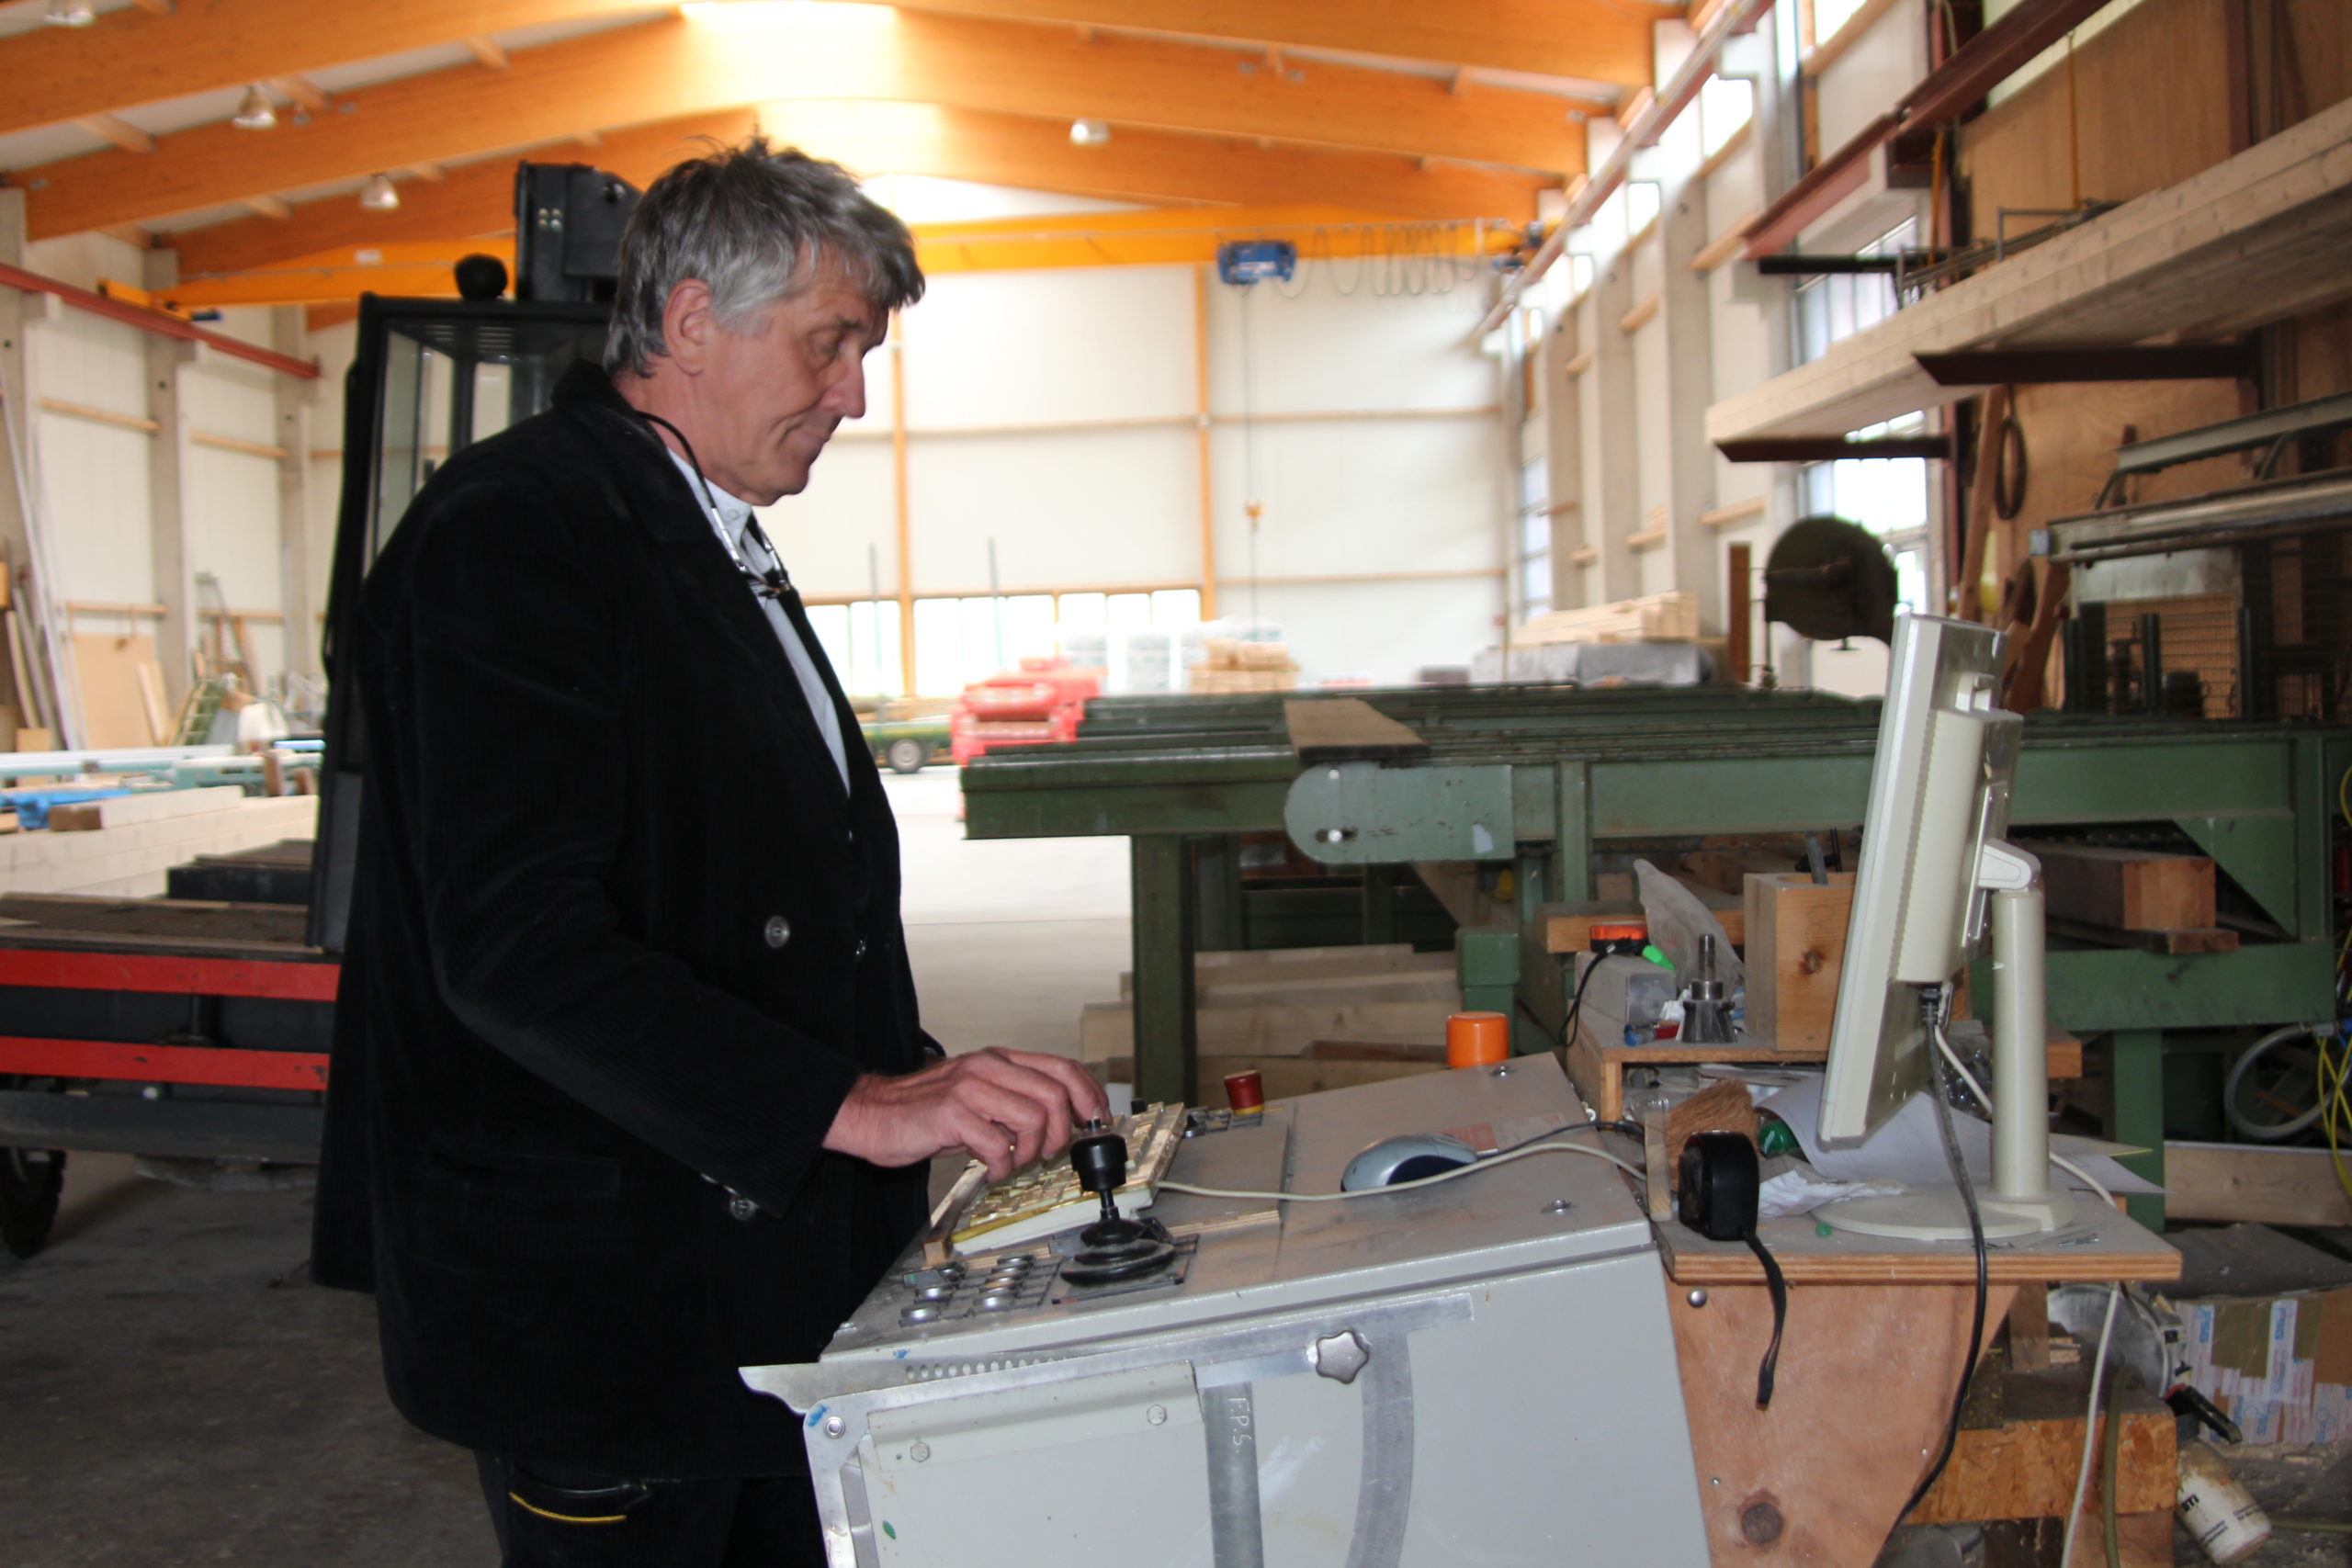 Franz Schäpermeier an der CAD-Maschine. Hier werden mit modernster Technik individuell geplante Holzkonstruktionen oder ganze Häuser erstellt. 